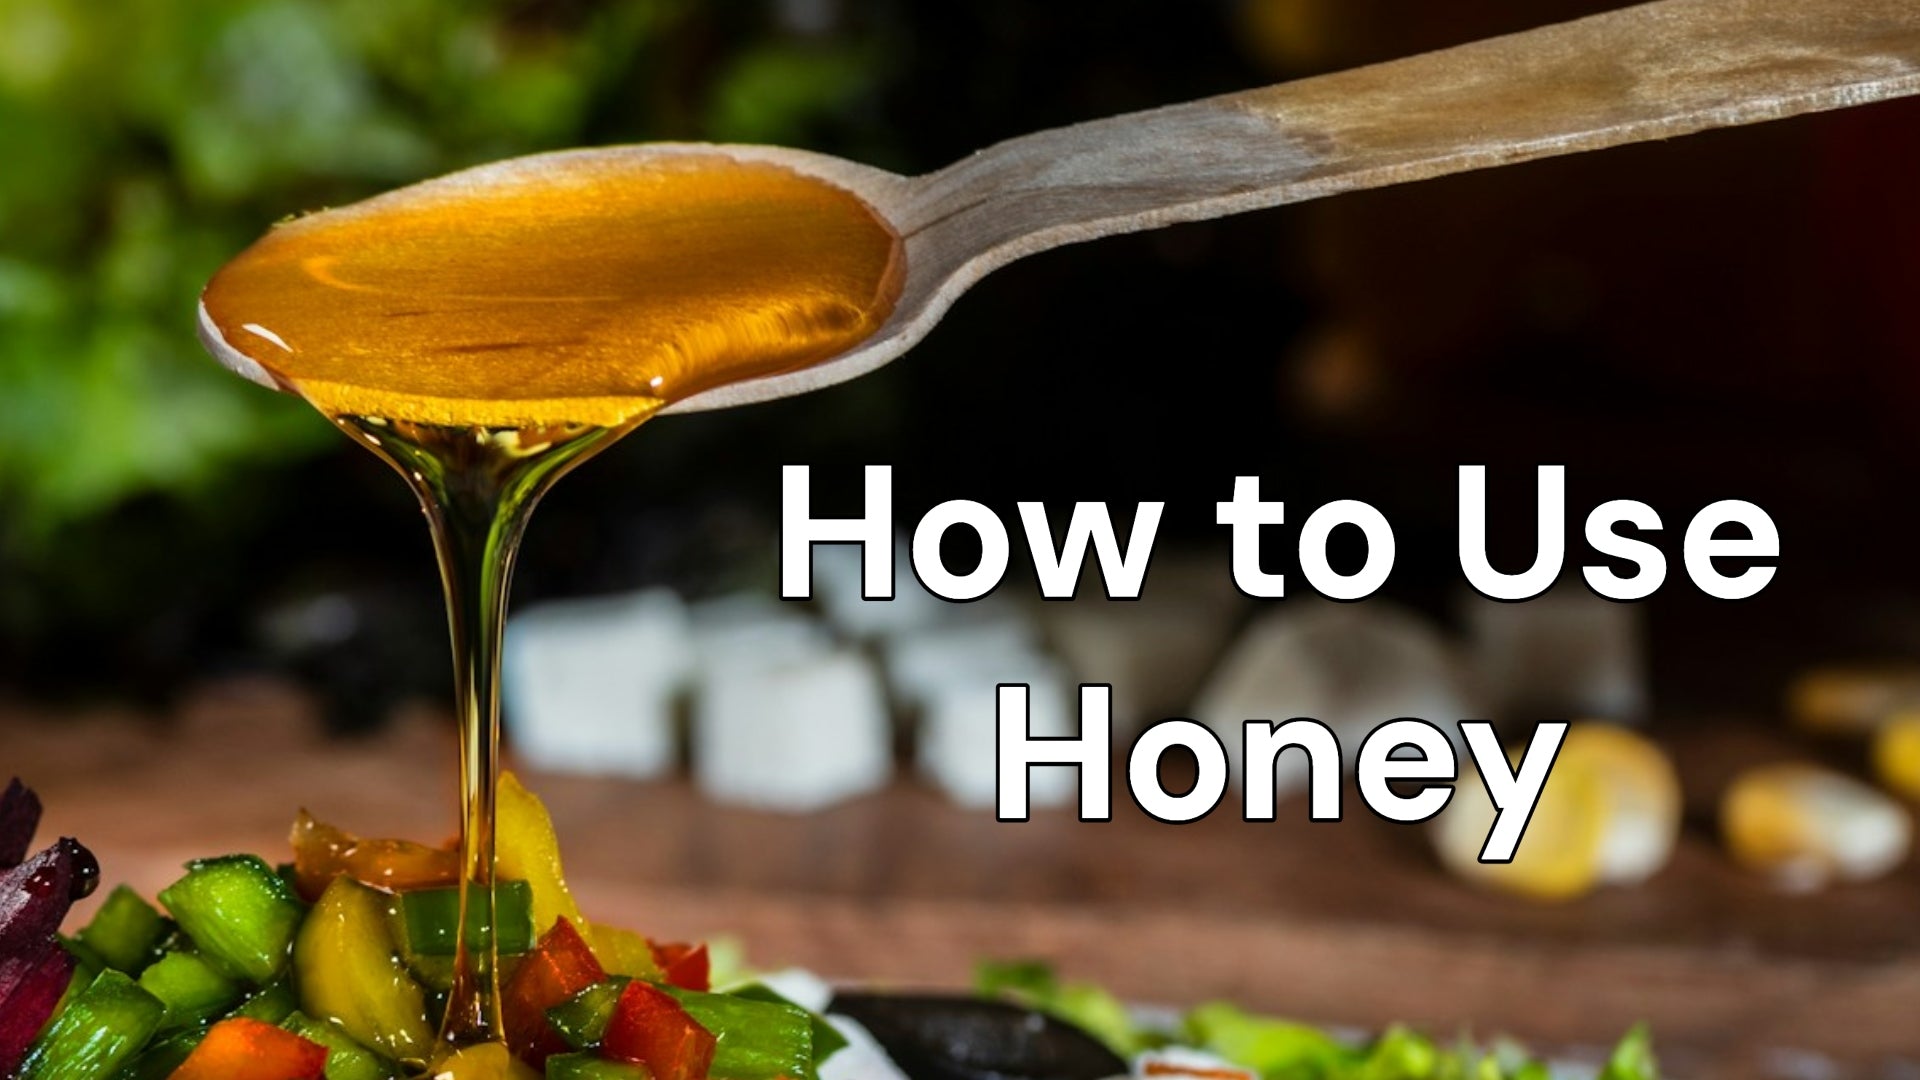 How Do I Use Honey?